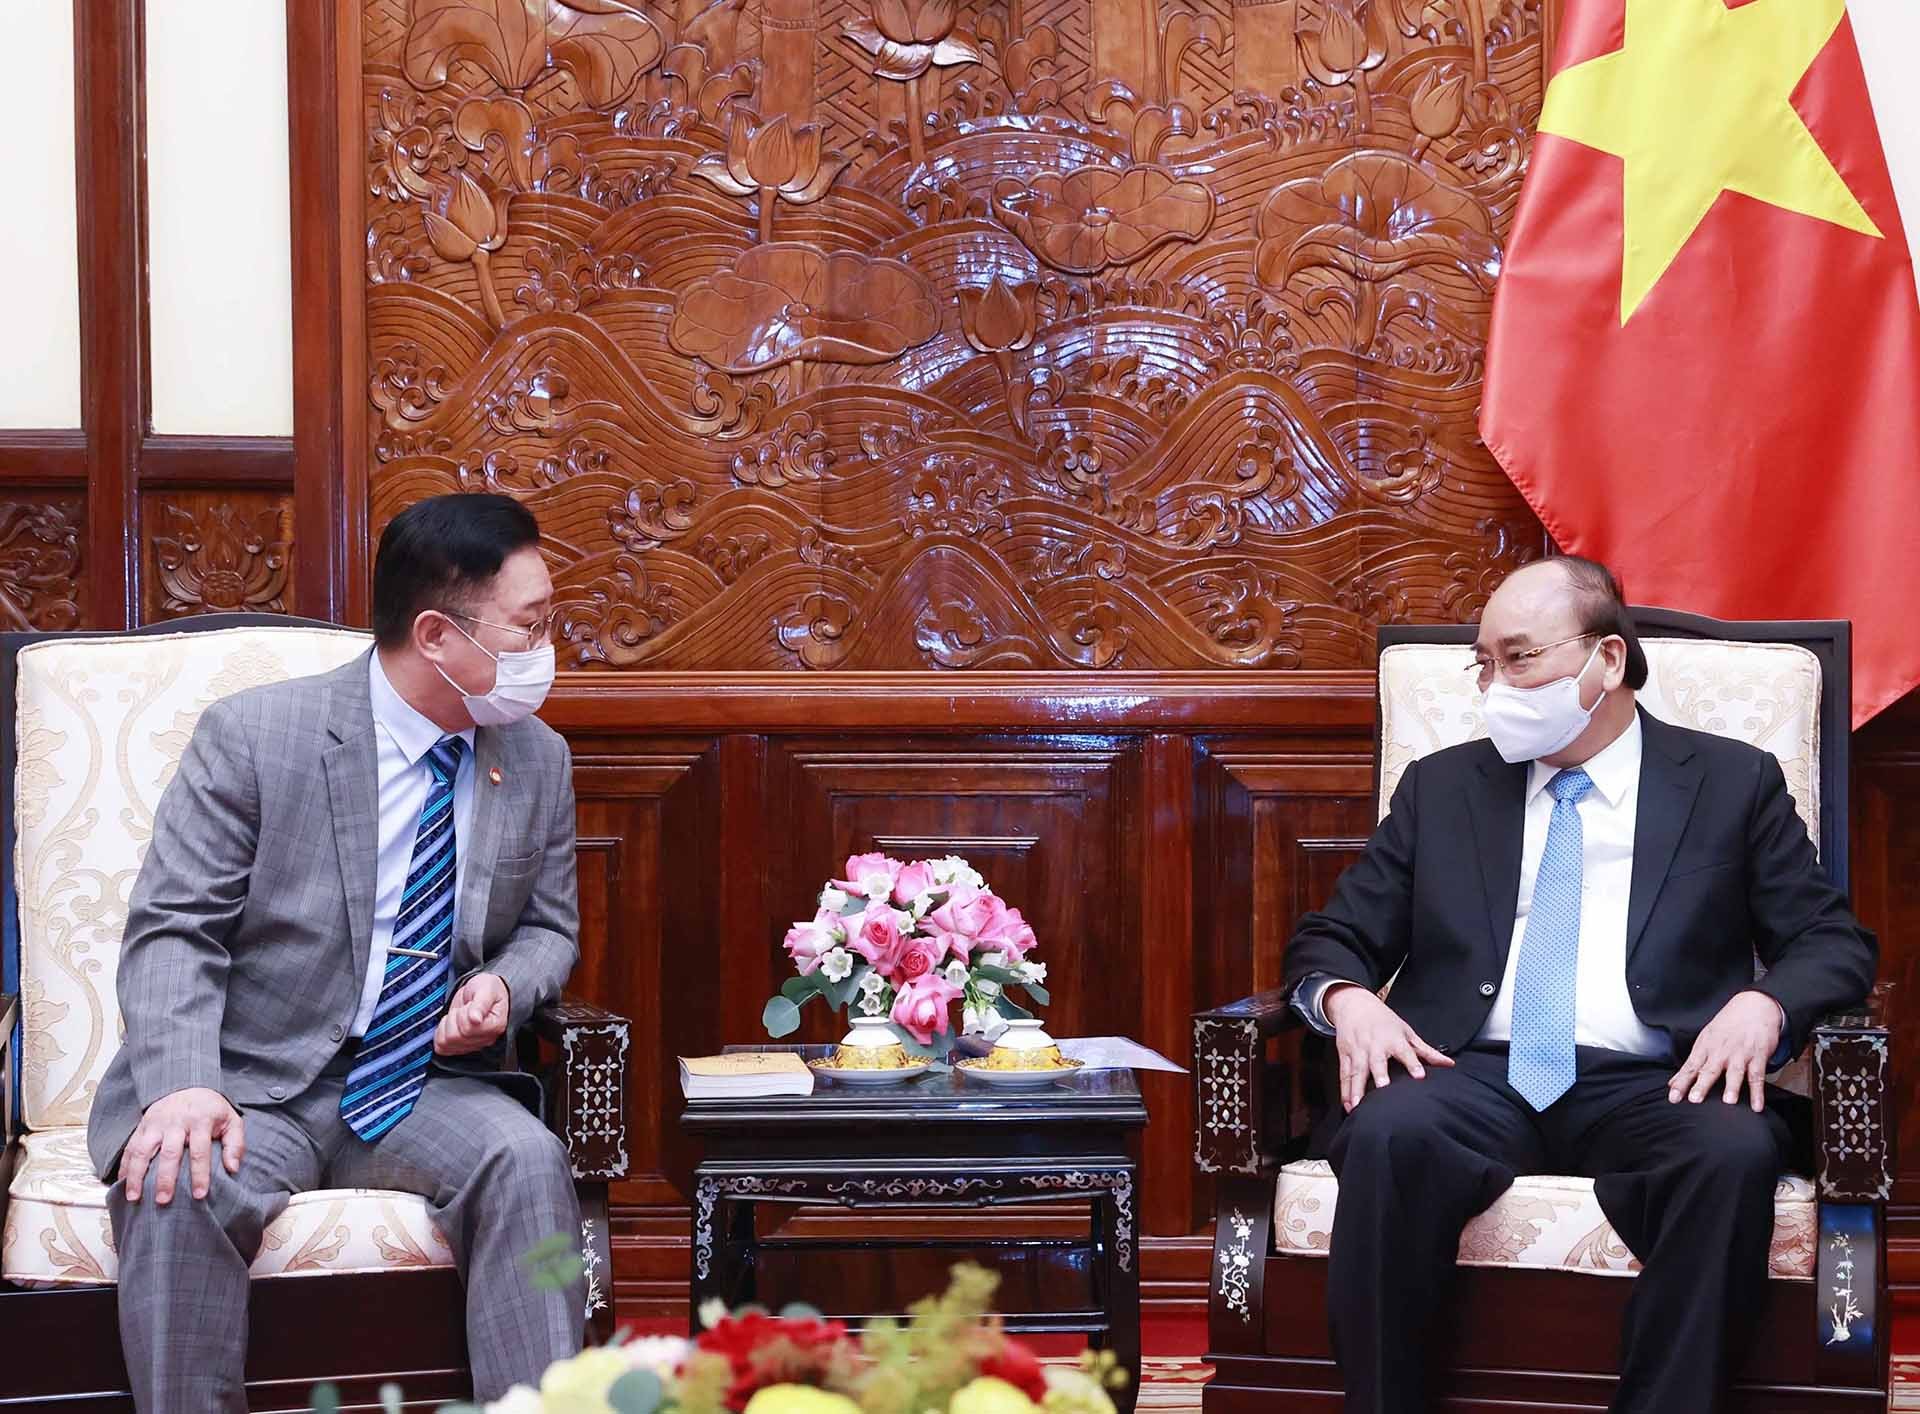 Chủ tịch nước Nguyễn Xuân Phúc tiếp ông Lý Xương Căn, hậu duệ đời thứ 31 của Vua Lý Thái Tổ tại Hàn Quốc và cũng là Đại sứ Du lịch của Việt Nam tại Hàn Quốc.